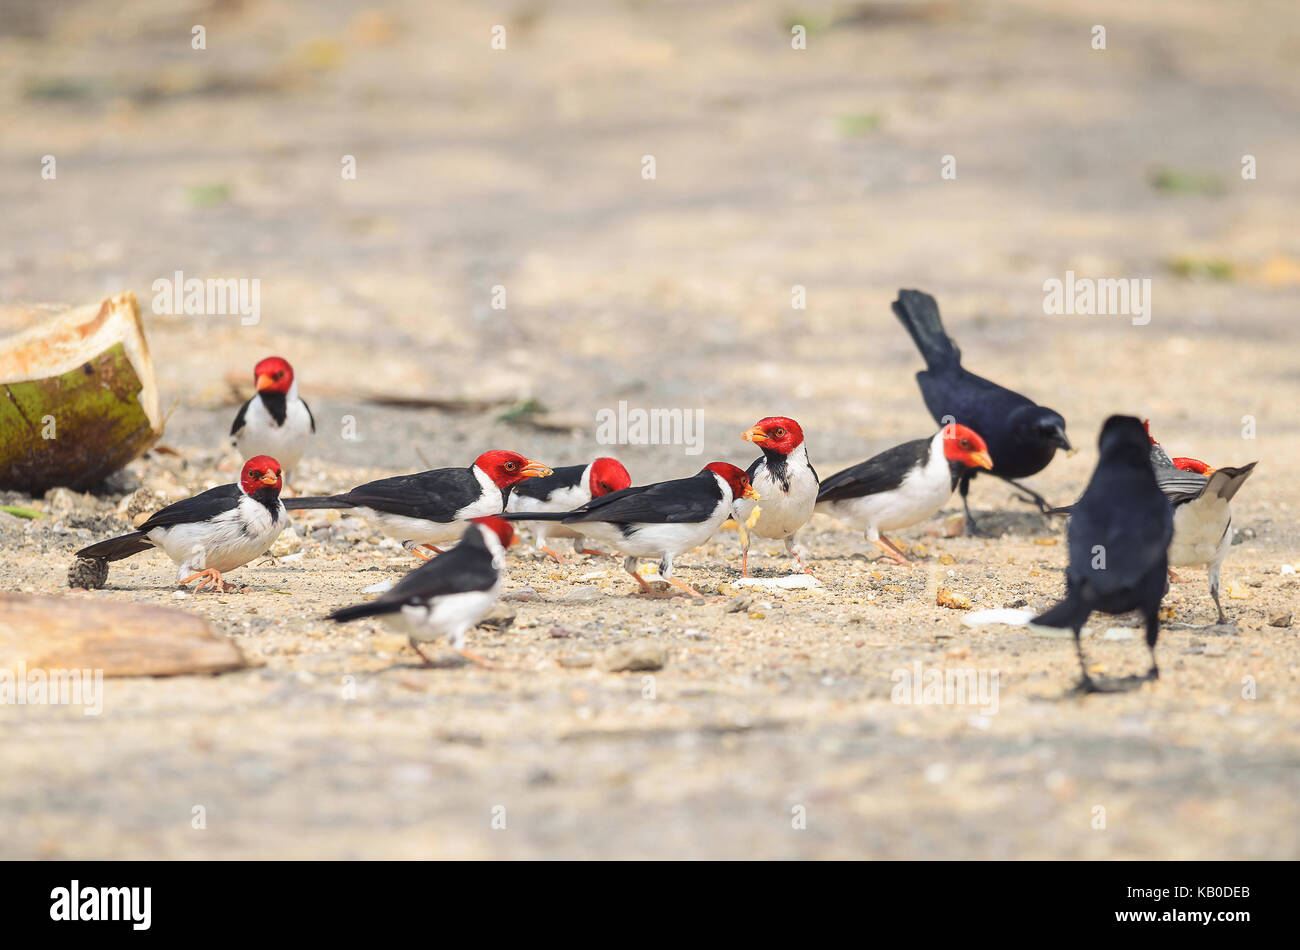 Gruppo di uccelli Cavalaria noto anche come Cardeal do Pantanal e alcuni uccelli neri intorno a. Uccello con testa di colore rosso, nero ali e ventre bianco. Foto scattata o Foto Stock